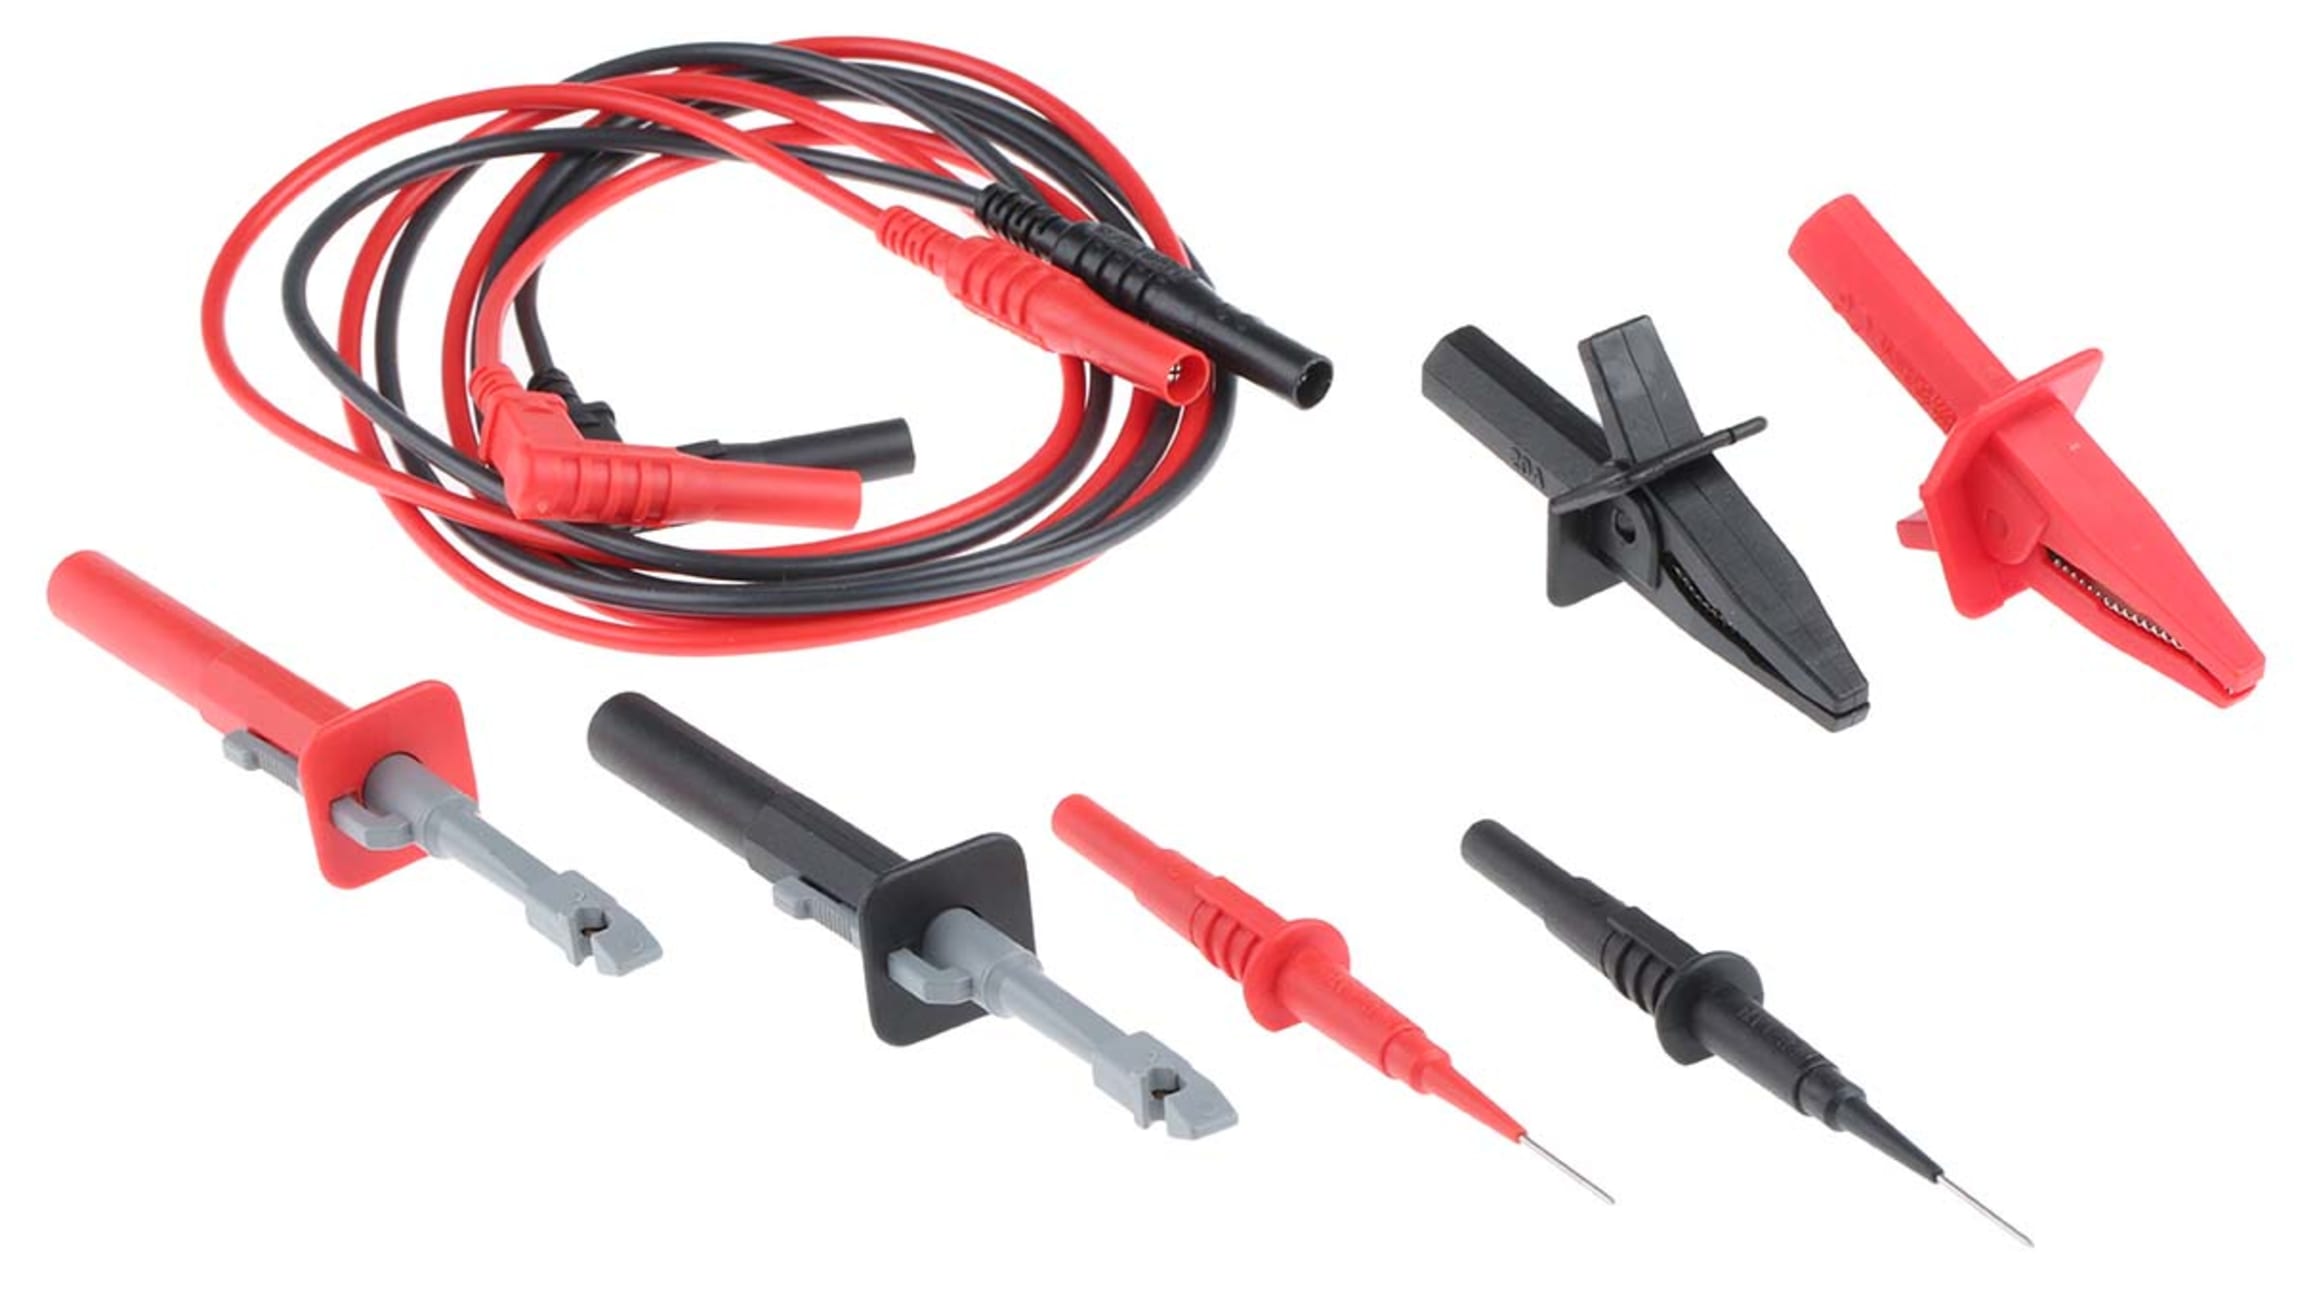 Sonde de test pour sonde multimètre Teste Leads pour câble de fil multimètre  avec pince Alligator Needle Tip Feeler Test Lead Kits